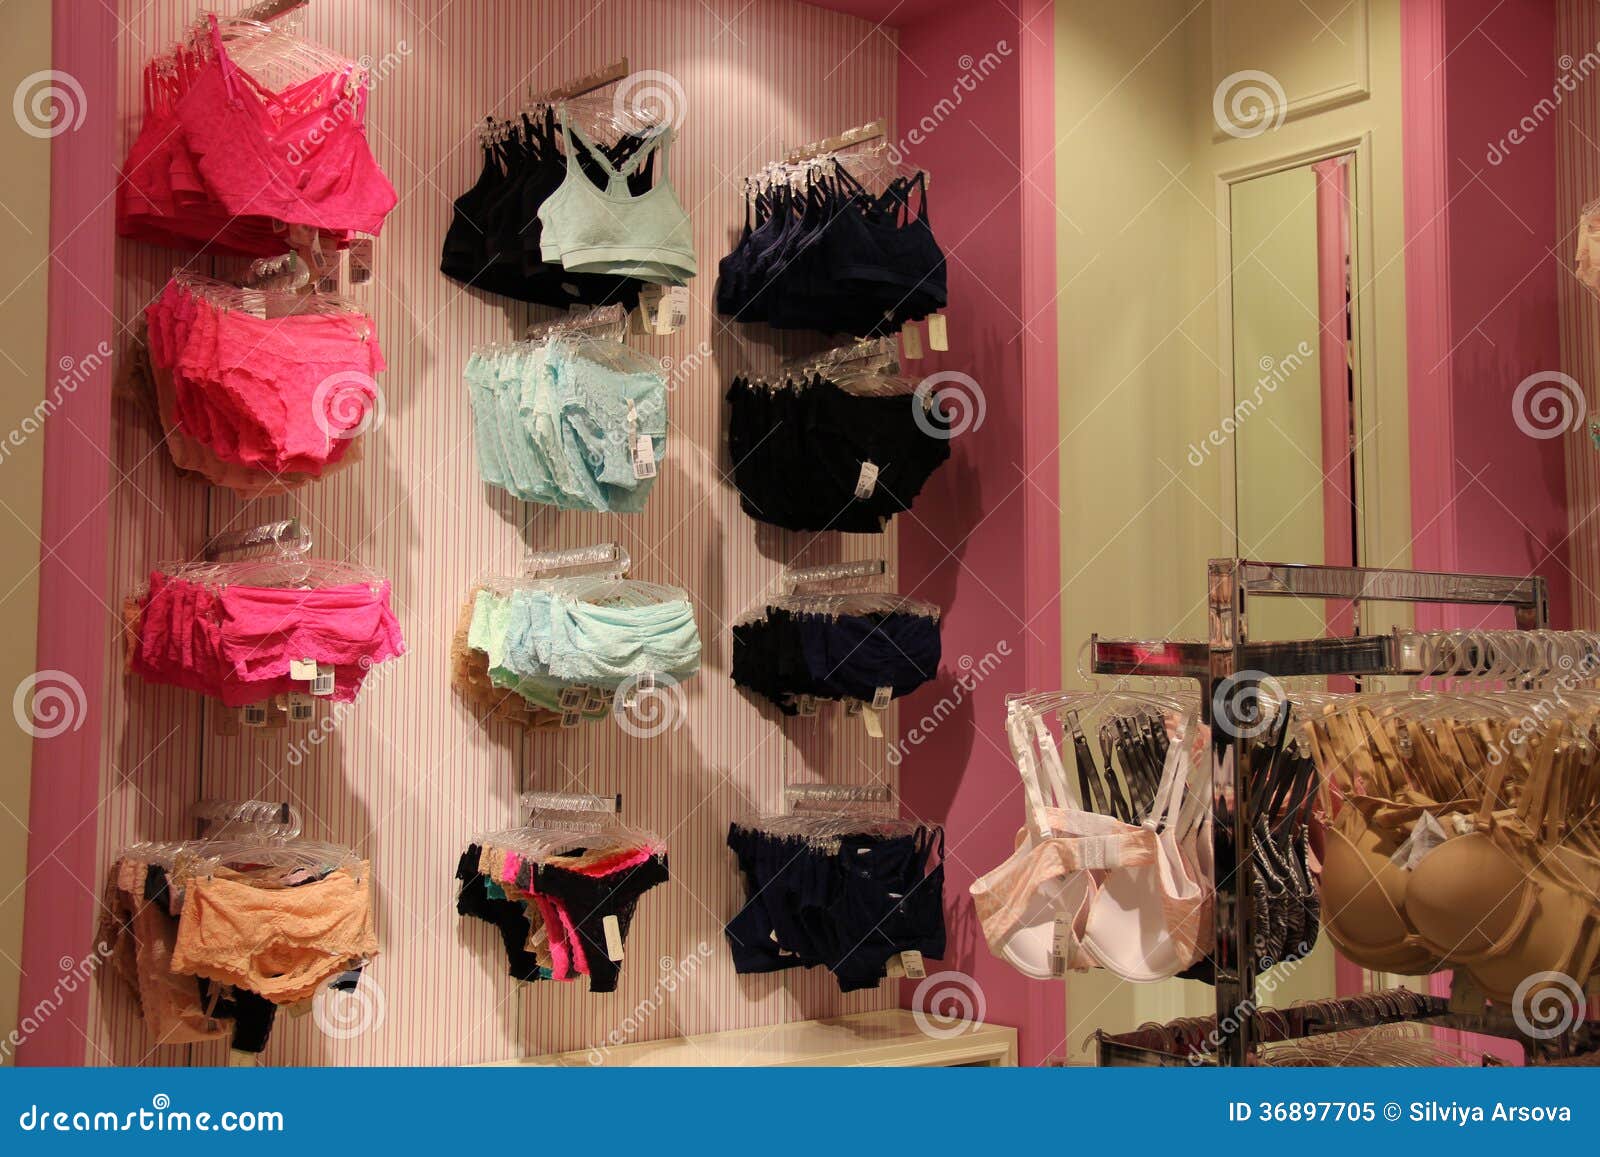 magasins de sous vêtements femme